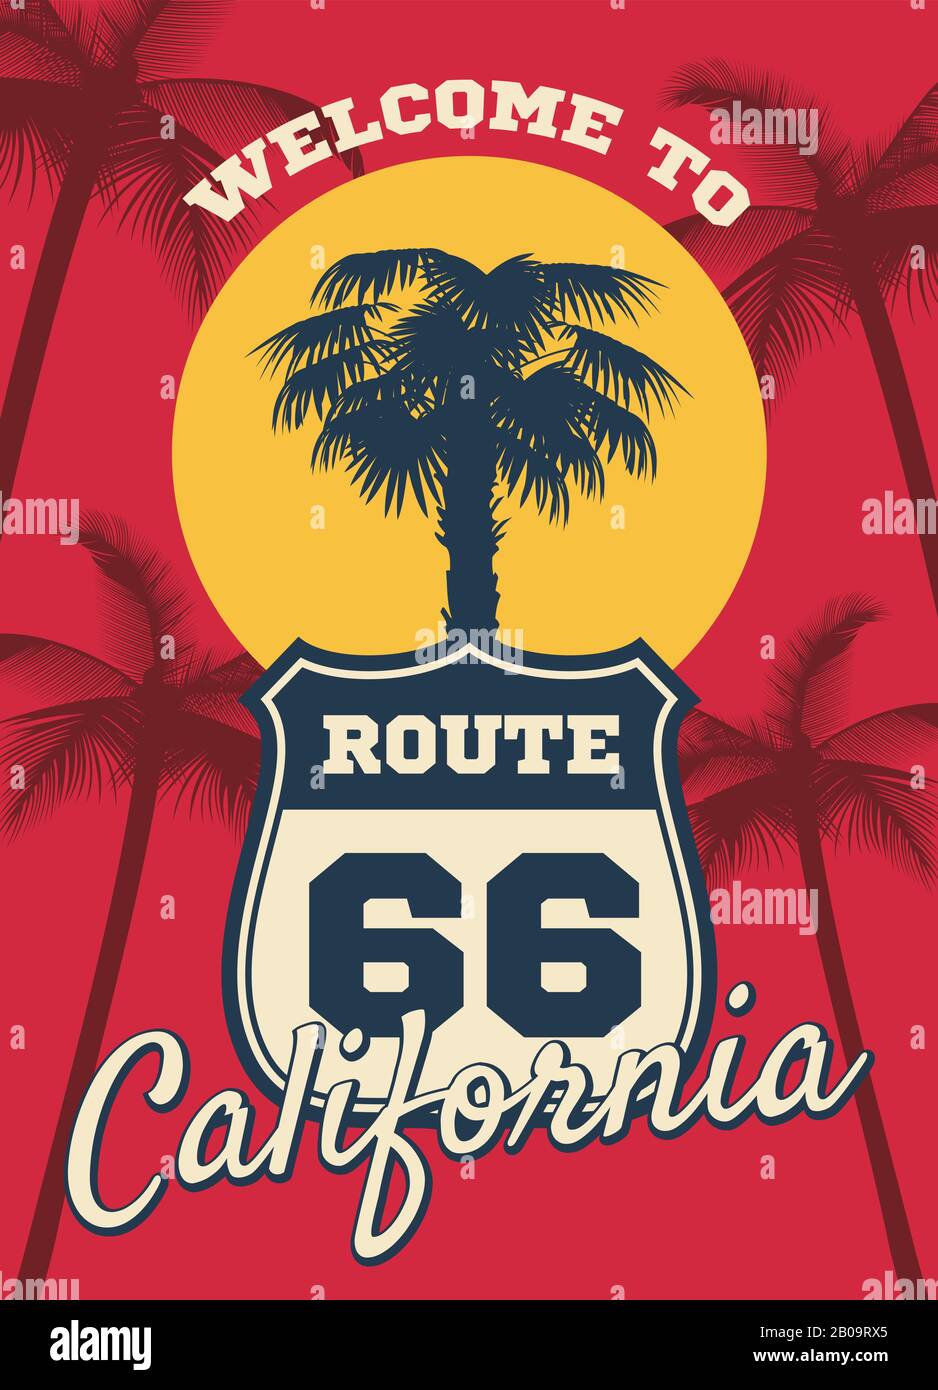 California plage seashore thème vecteur fond de rêve, carte postale design. Silhouette de palmier d'arbre en californie, illustration du panneau route 66 pour voyager en californie Illustration de Vecteur